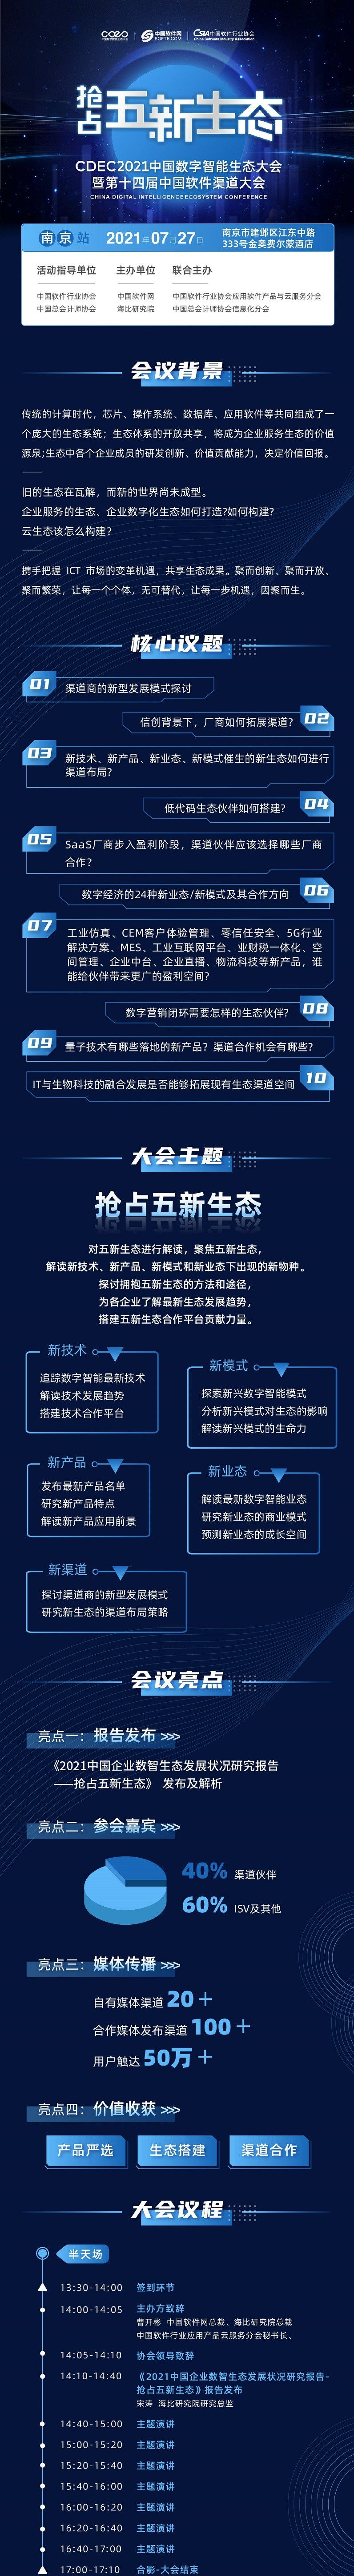 CDEC2021中国数字智能生态大会暨第十四届中国软件渠道大会-南京站_证书认证_门票优惠_活动家官网报名